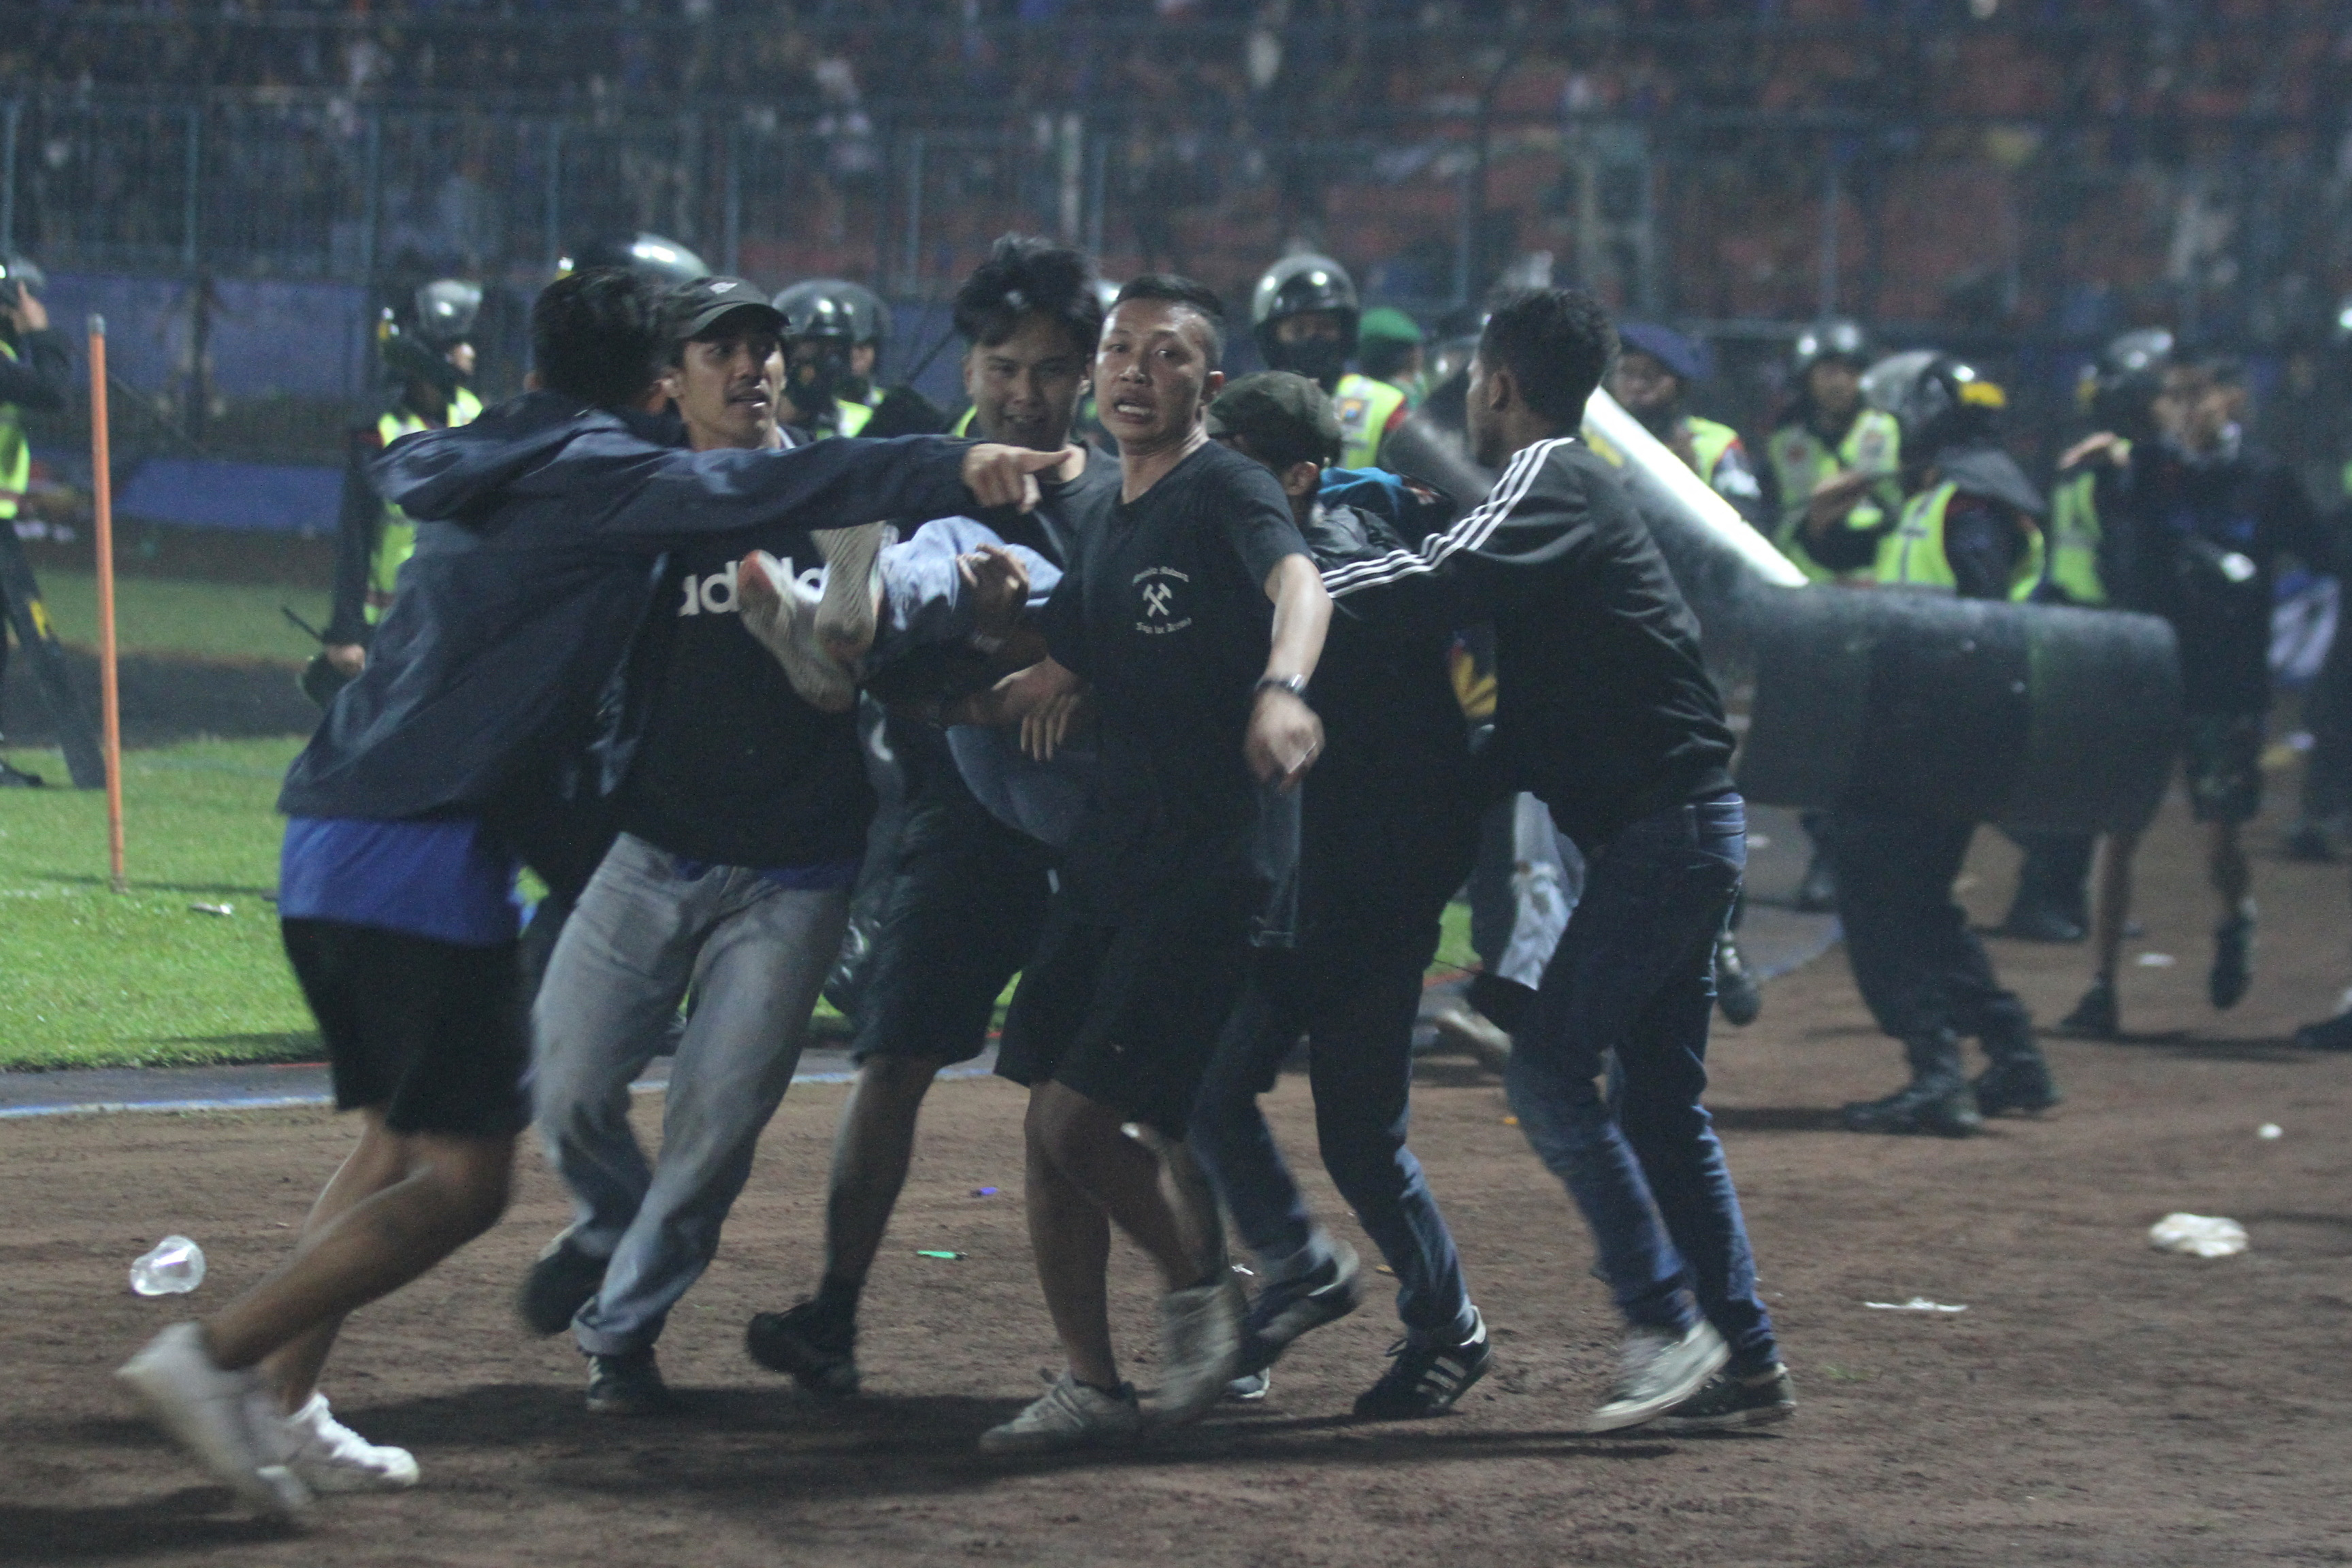 Los partidarios evacuan a un hombre debido al impacto de los gases lacrimógenos disparados por la policía (Reuters)